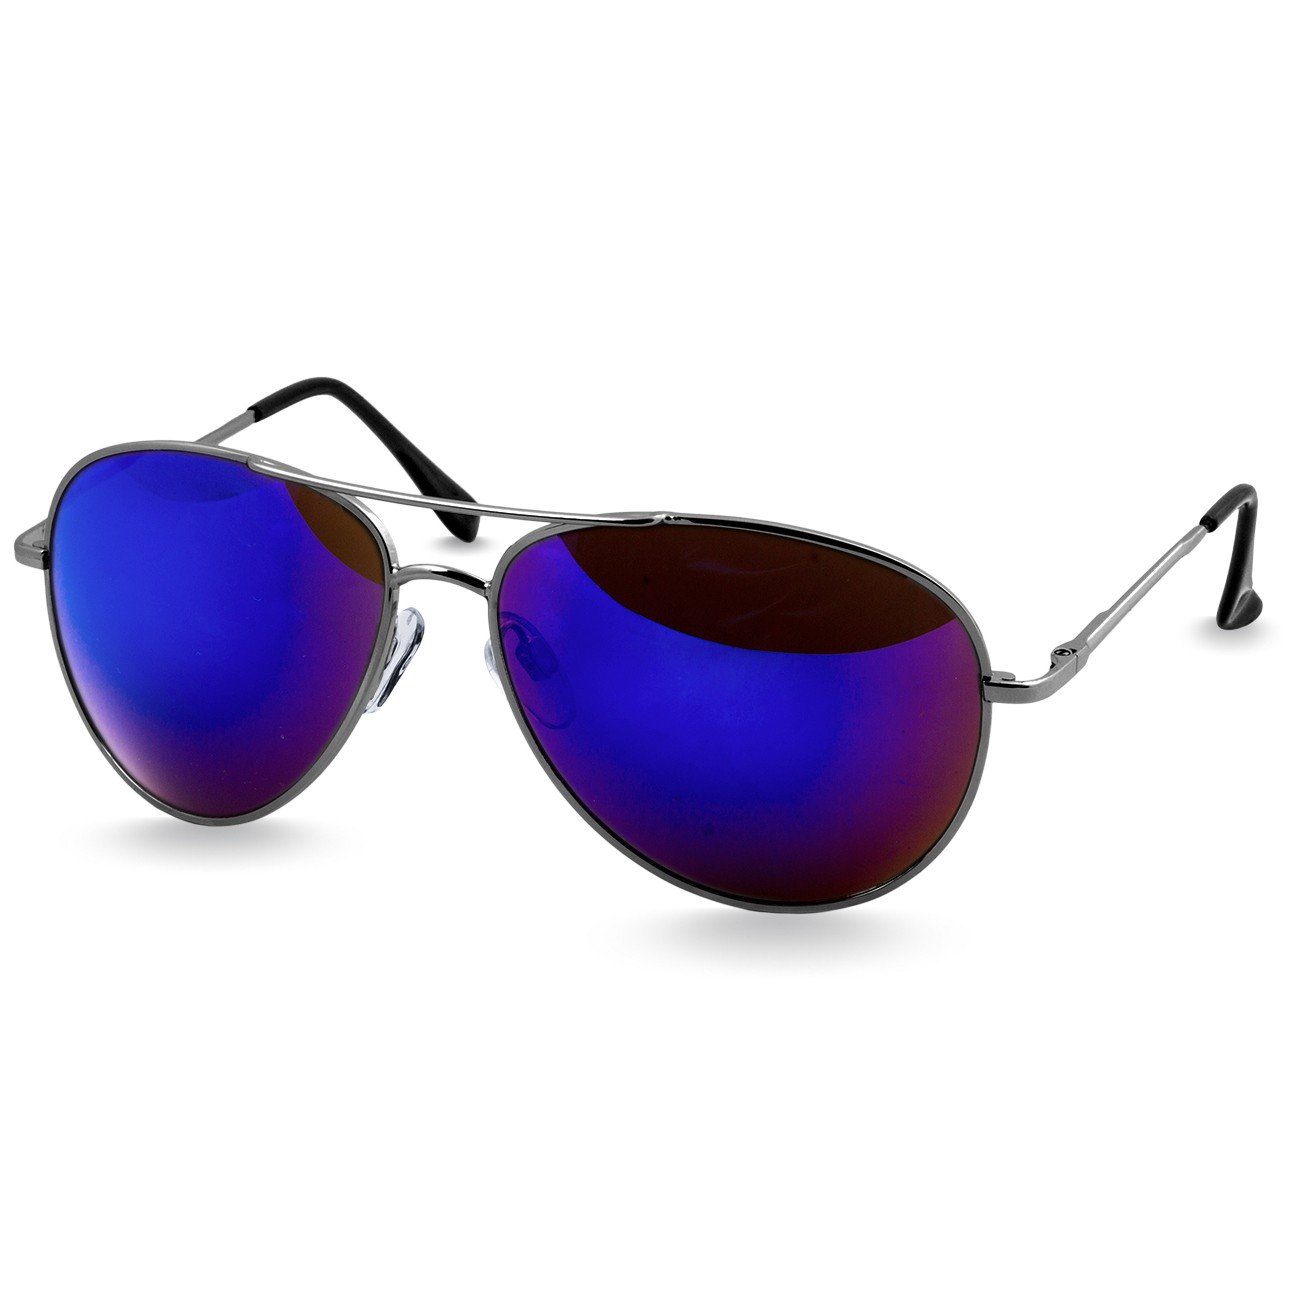 Caspar Sonnenbrille SG013 klassische Unisex Retro Pilotenbrille silber / blau verspiegelt | Sonnenbrillen